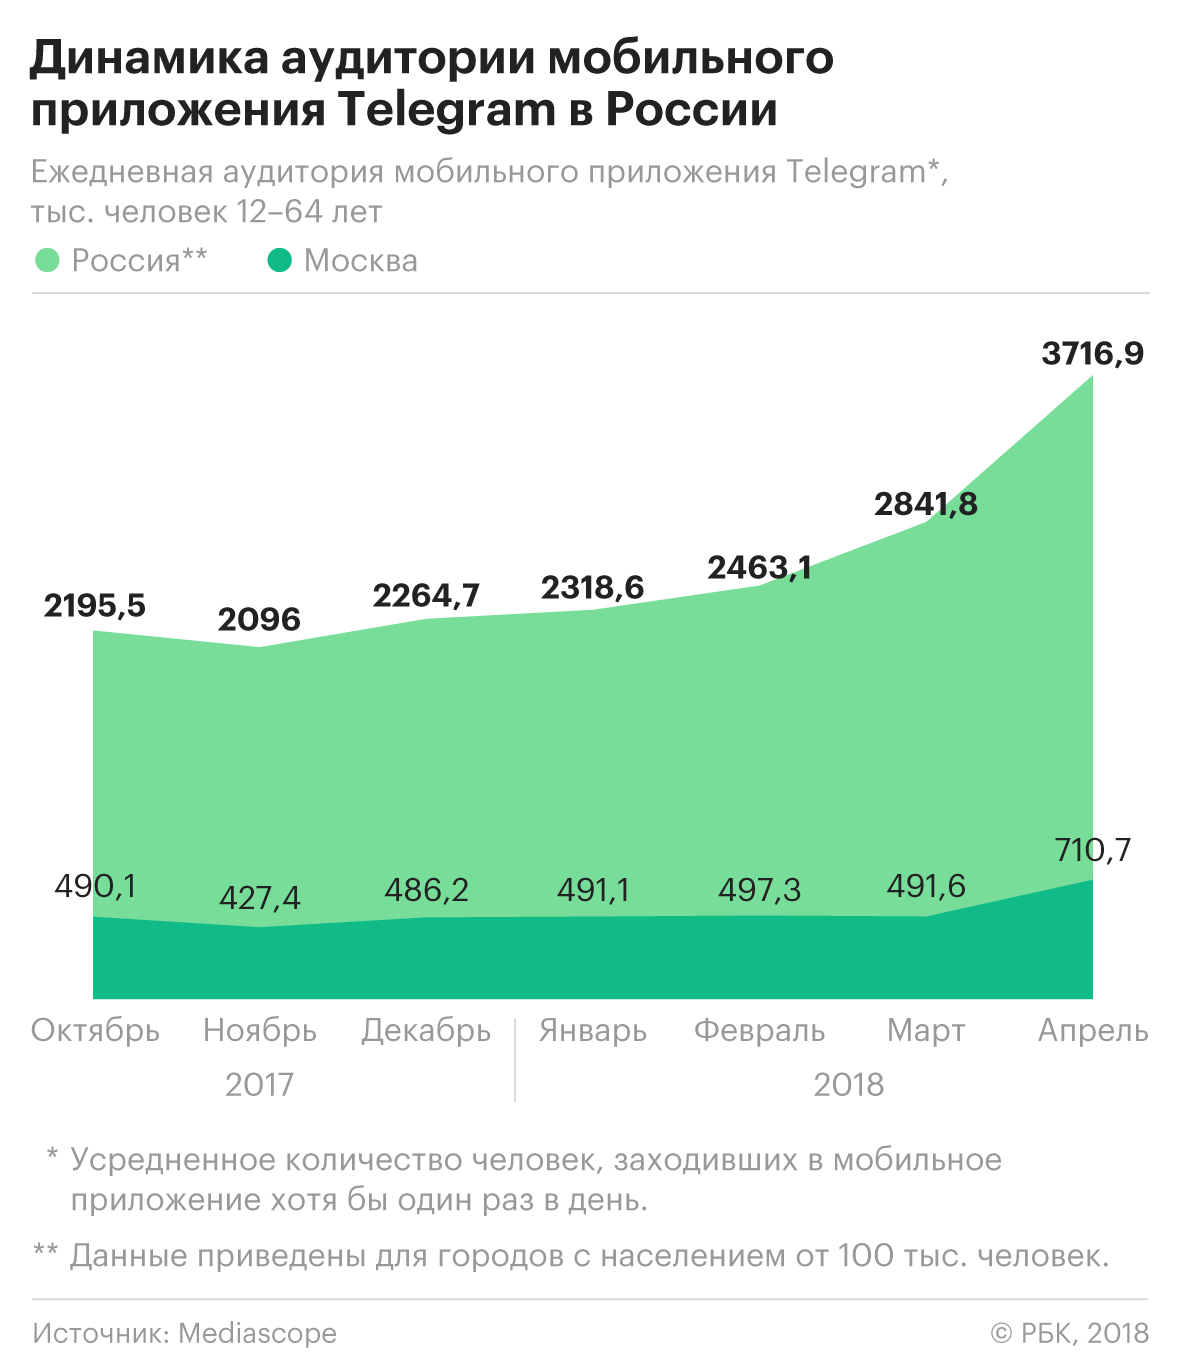 «Эффект Стрейзанд»: что произошло с аудиторией Telegram в России